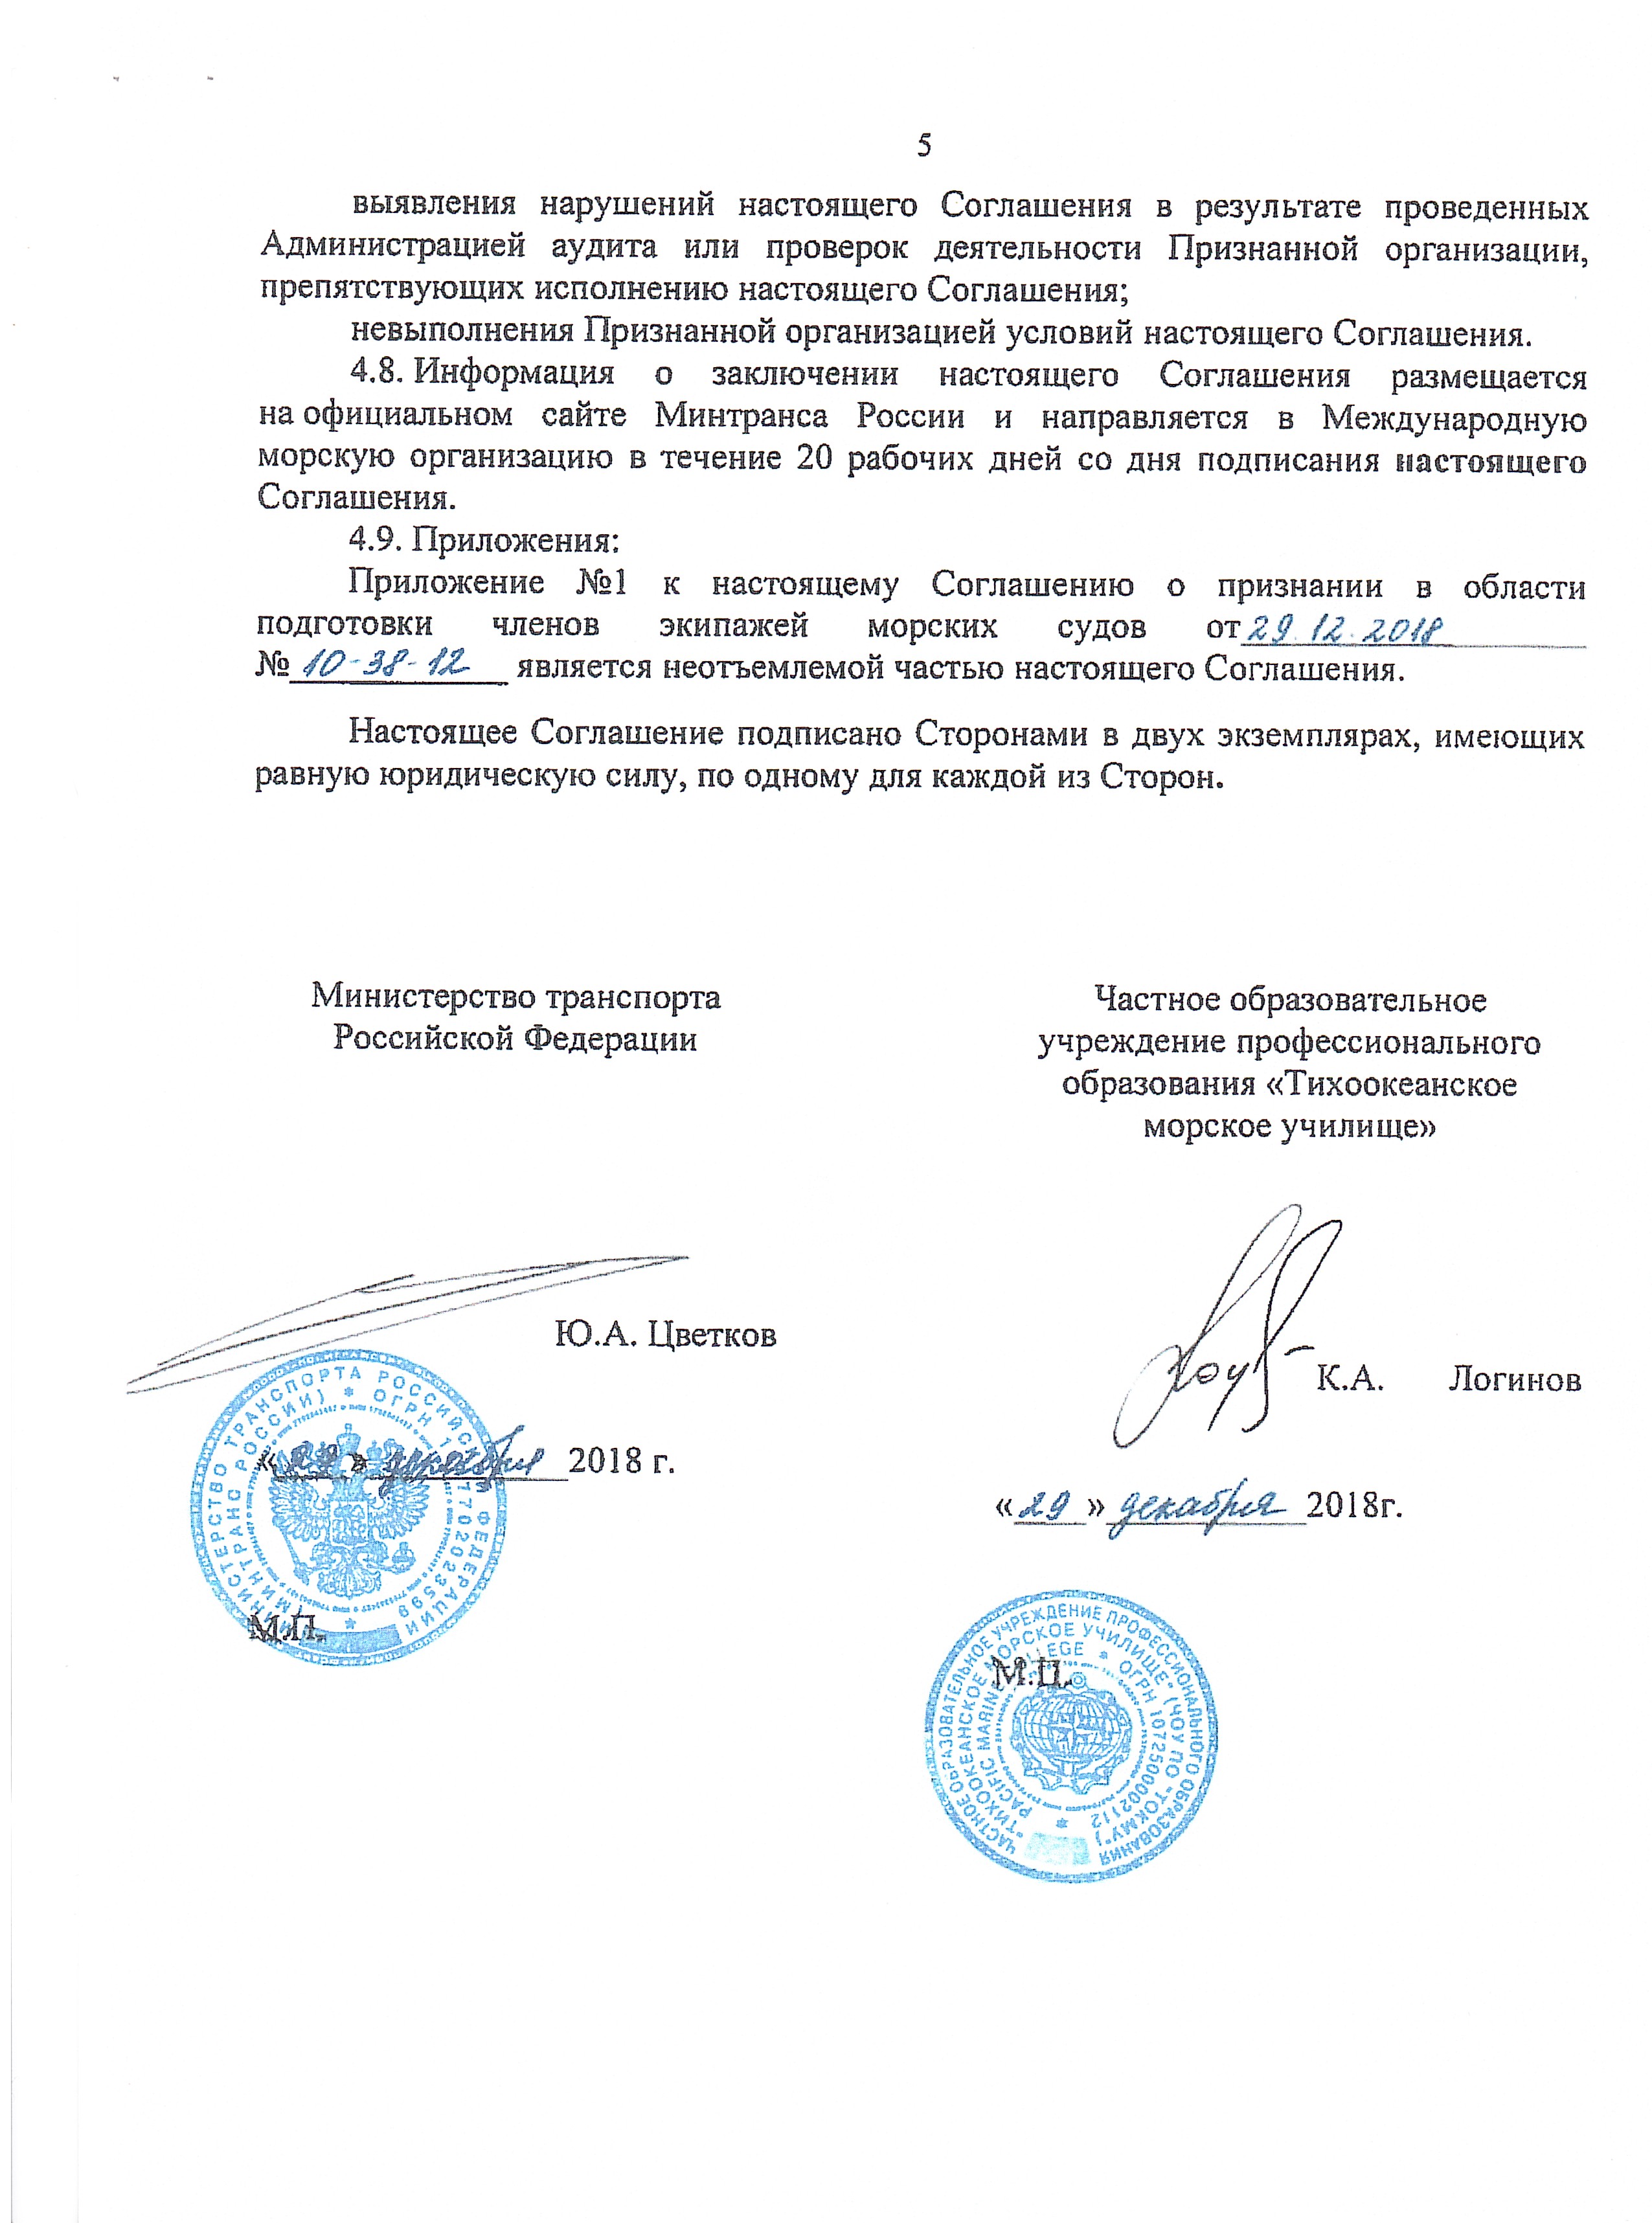 Соглашение о признании Министерства транспорта Российской Федерации  в области подготовки членов экипажей морских судов